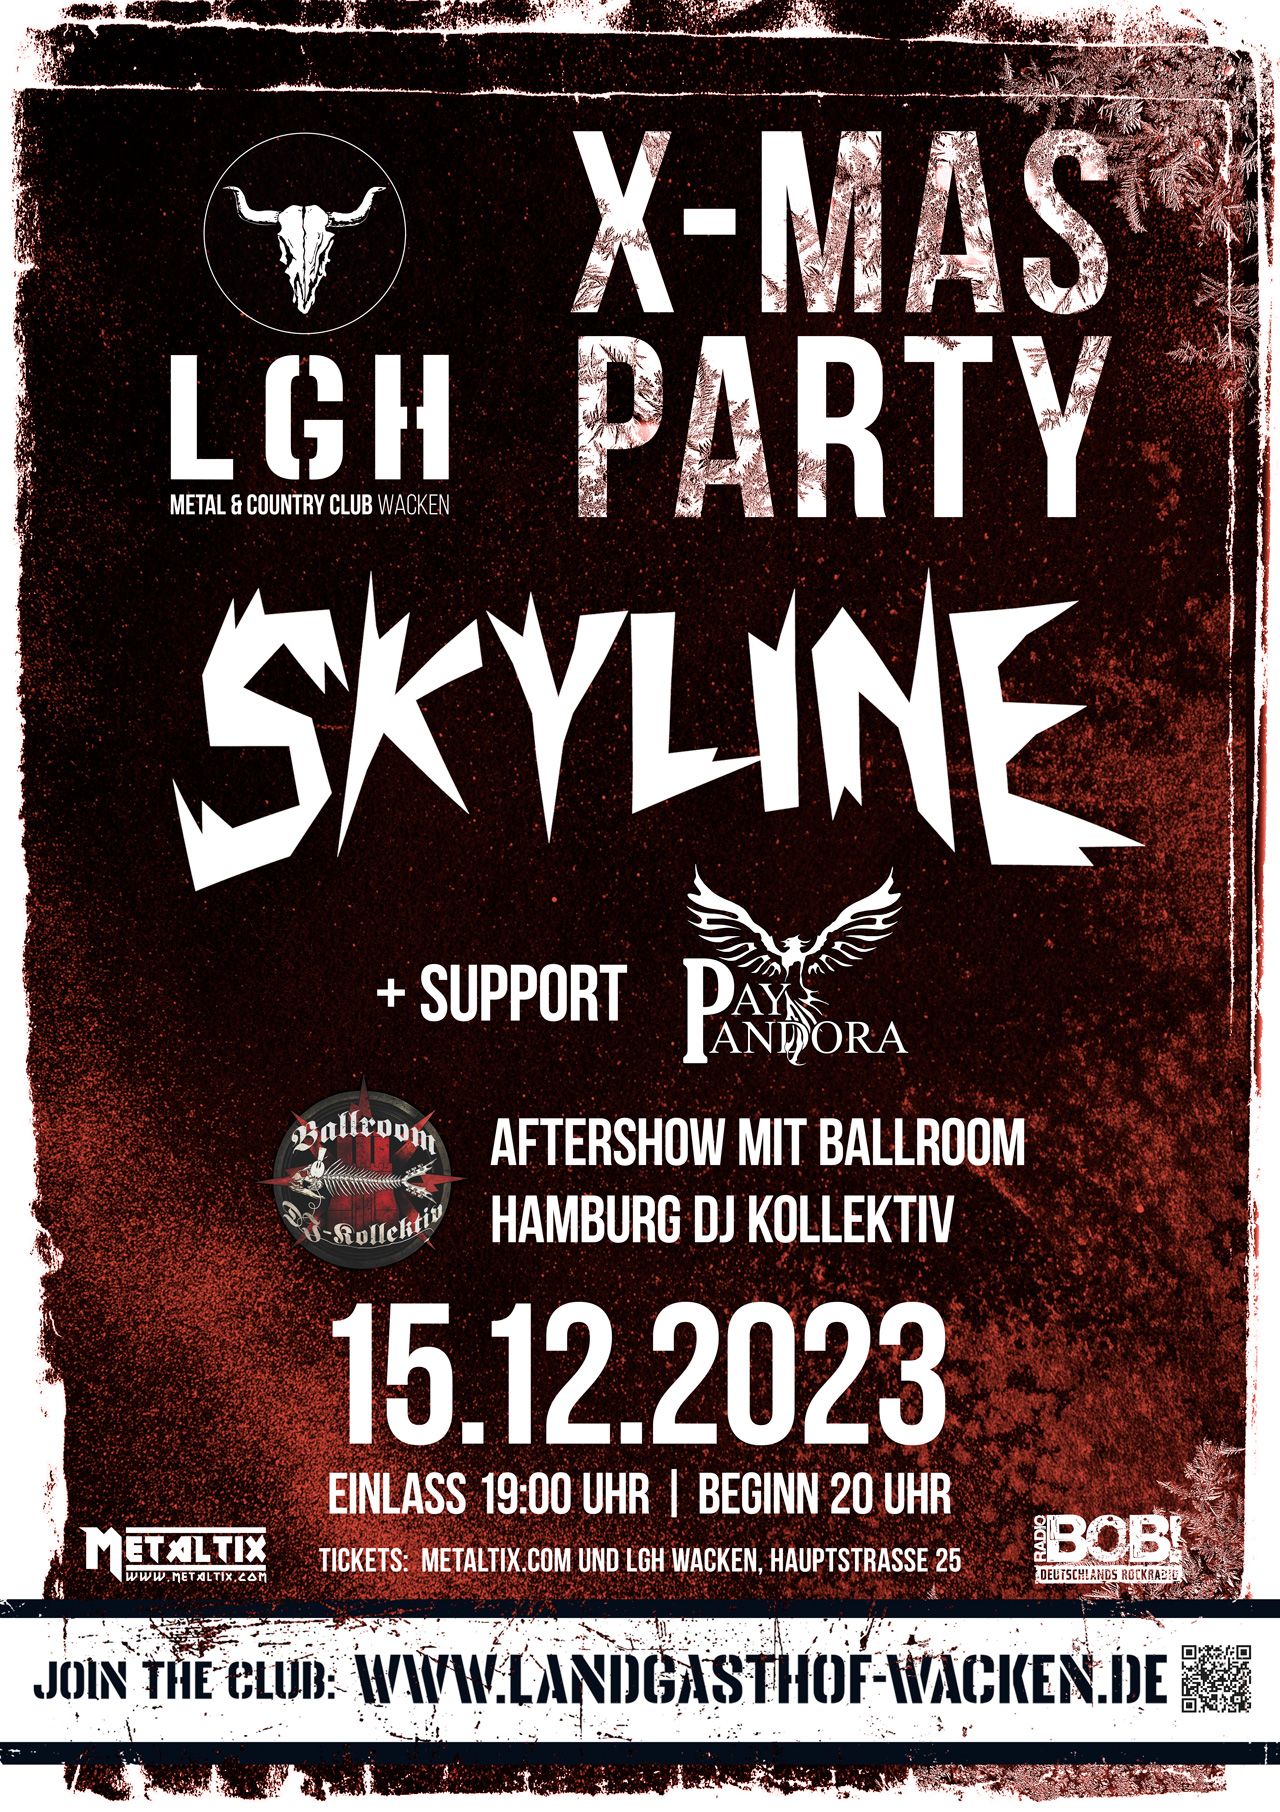 LGH X-MAS Party mit Skyline + Pay Pandora